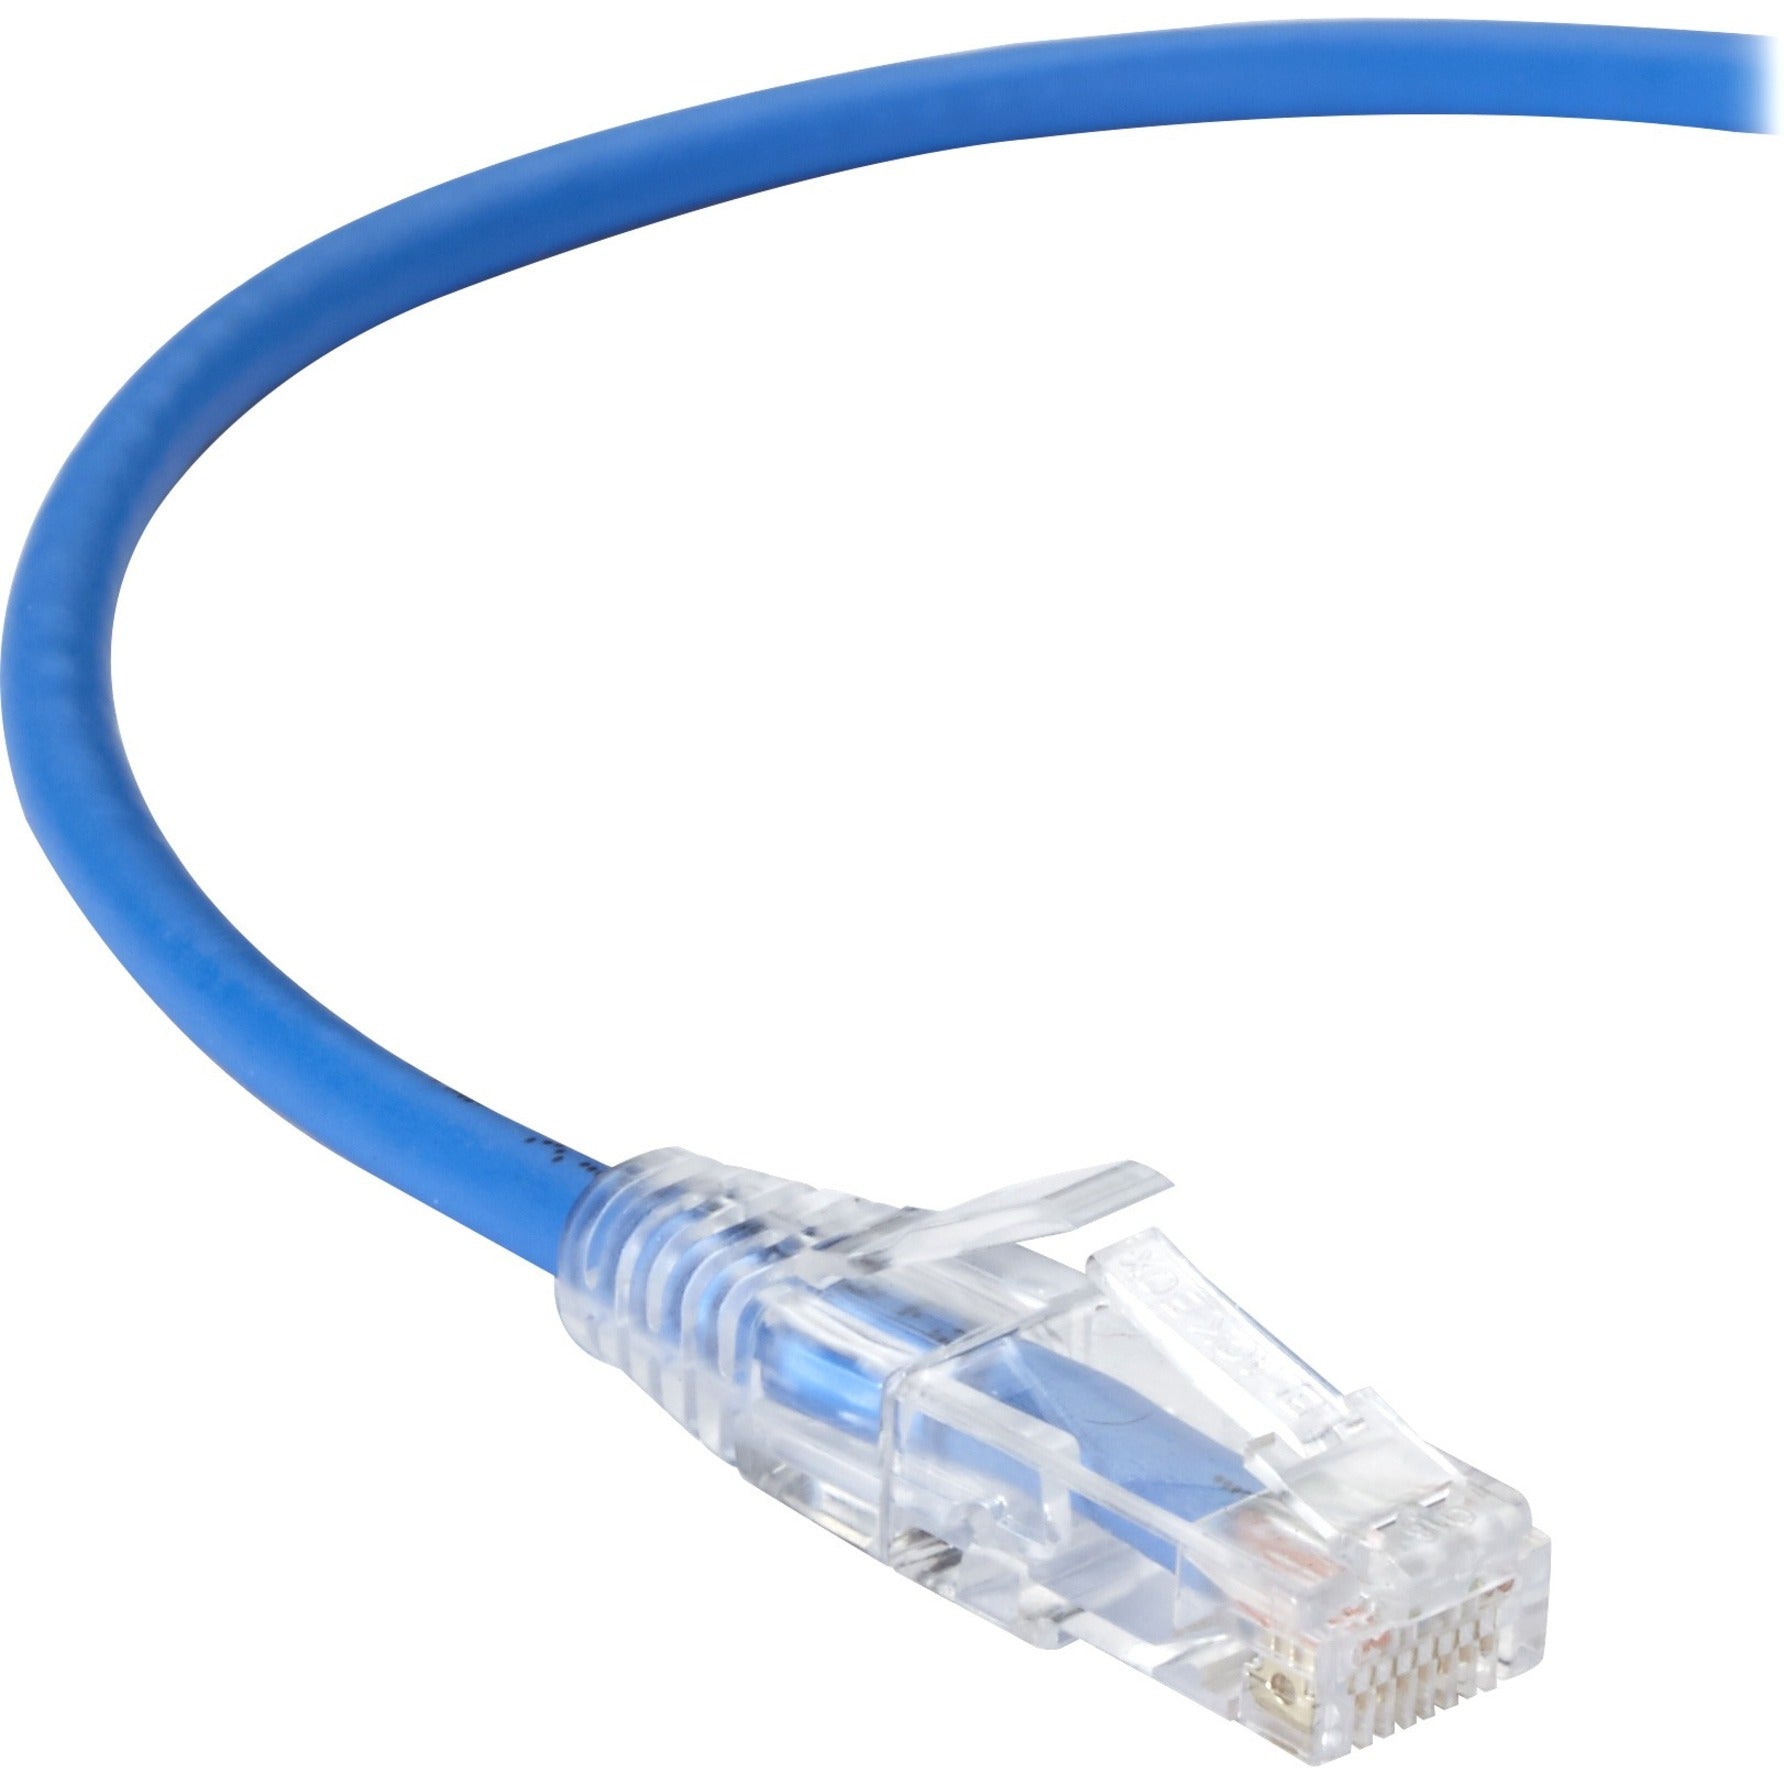 Black Box C6PC28-BL-05 Slim-Net Cat.6 UTP Patch Network Cable 5 ft Snagless Boot 10 Gbit/s Data Transfer Rate Marca: Black Box Cable de red de parche Cat.6 UTP Slim-Net C6PC28-BL-05 5 pies bota sin enganches Tasa de transferencia de datos de 10 Gbit/s